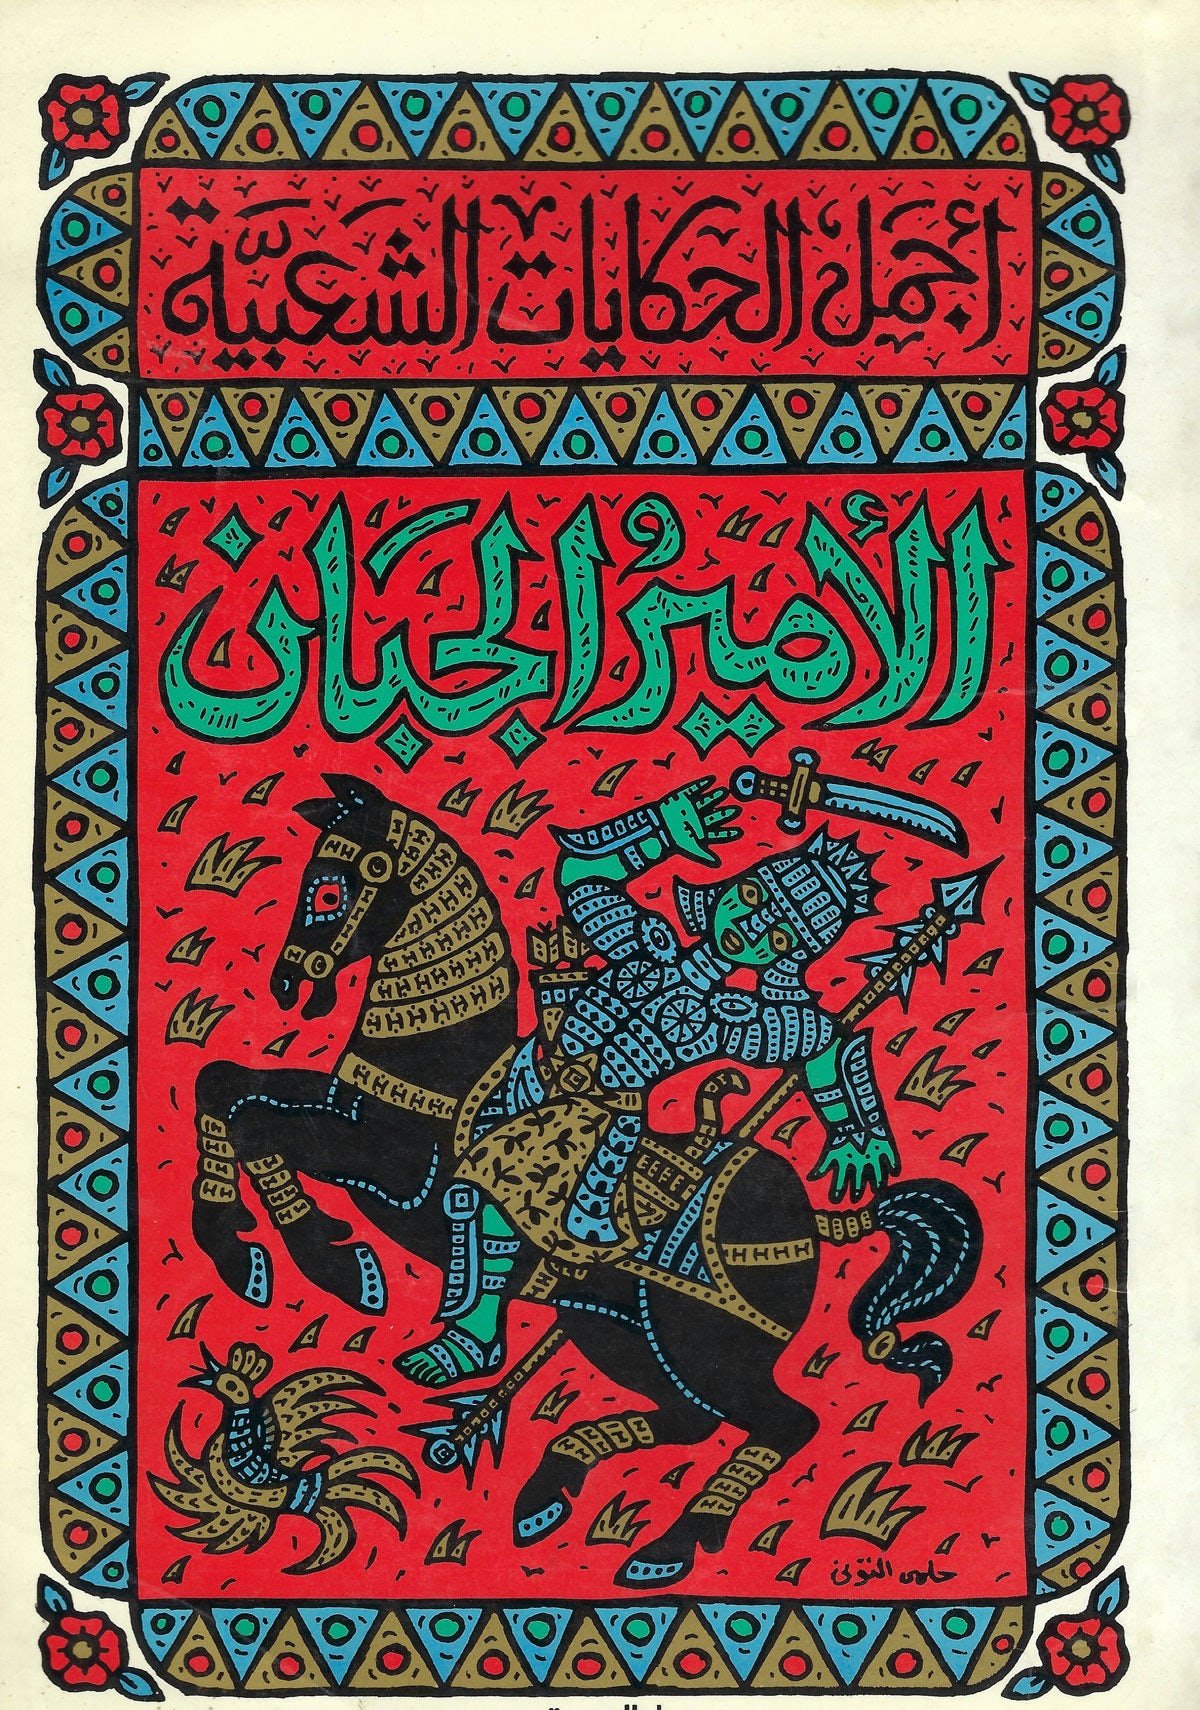 The Coward Prince by Jacob Al Sharoni, 1983. Designer: Helmi Eltuni; Publisher: Al Shrouk